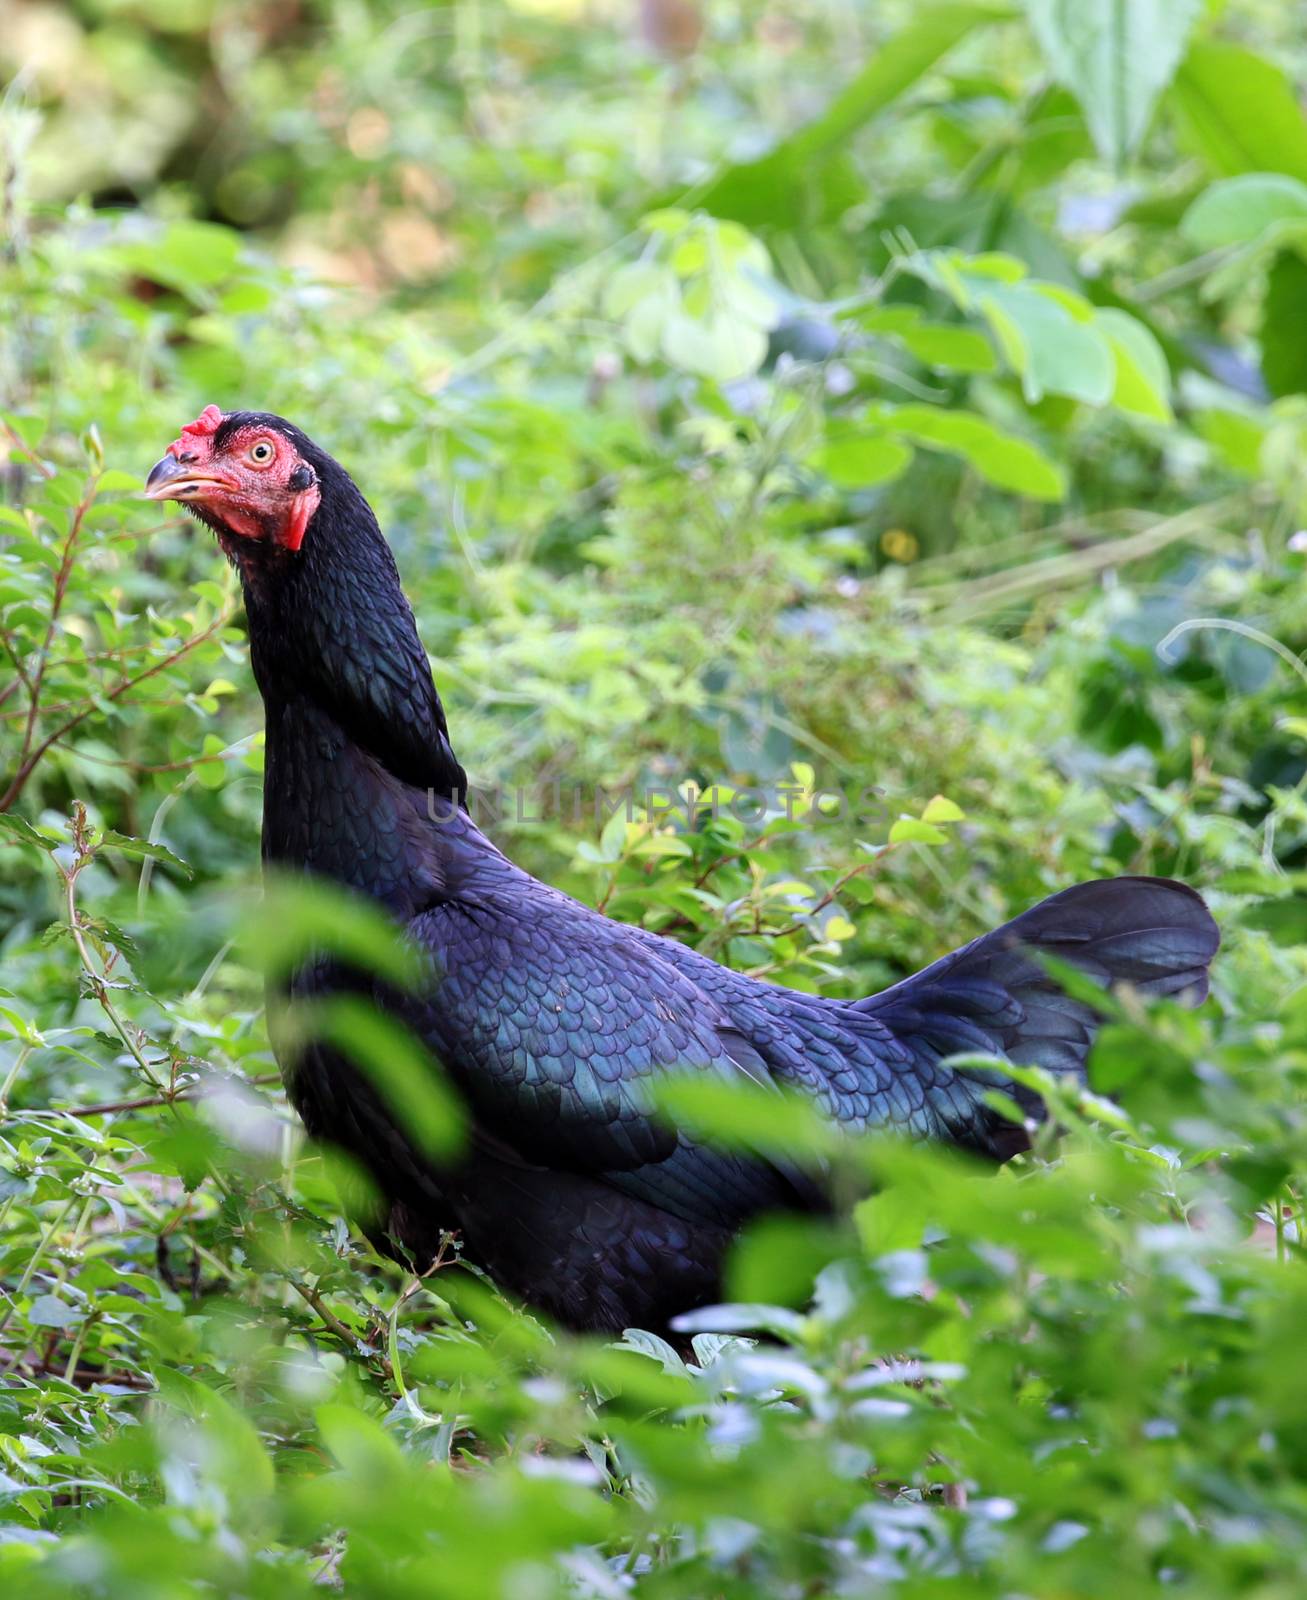 Image of a black hen in green field.